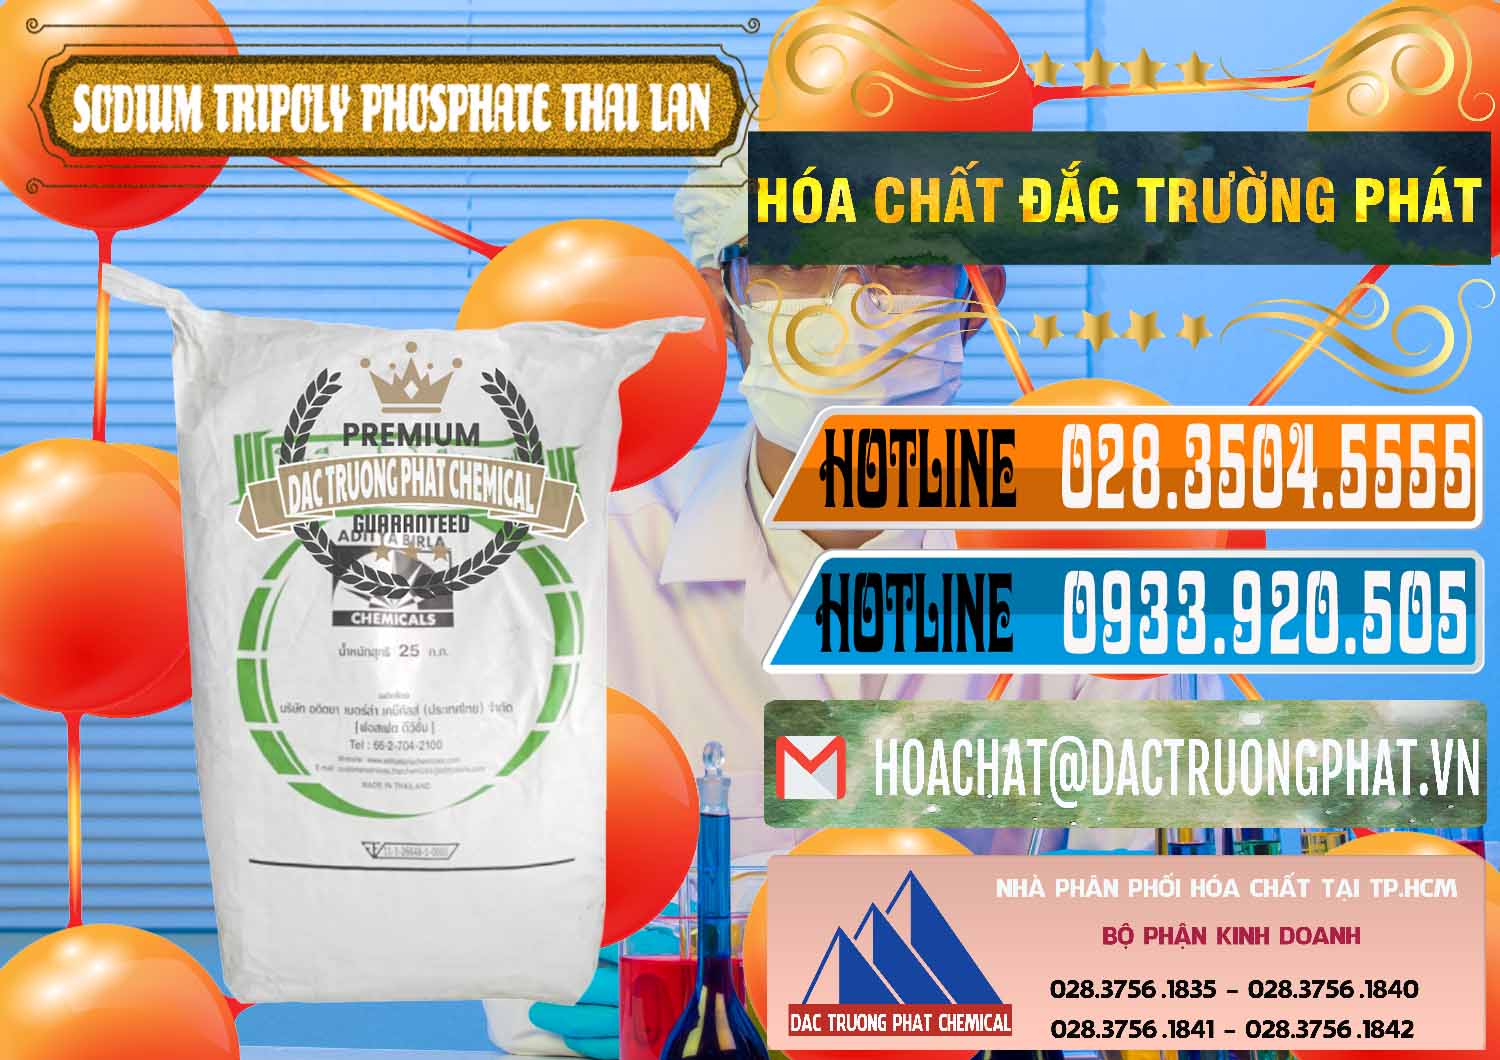 Cung cấp và bán Sodium Tripoly Phosphate - STPP Aditya Birla Grasim Thái Lan Thailand - 0421 - Nhà nhập khẩu ( cung cấp ) hóa chất tại TP.HCM - stmp.net